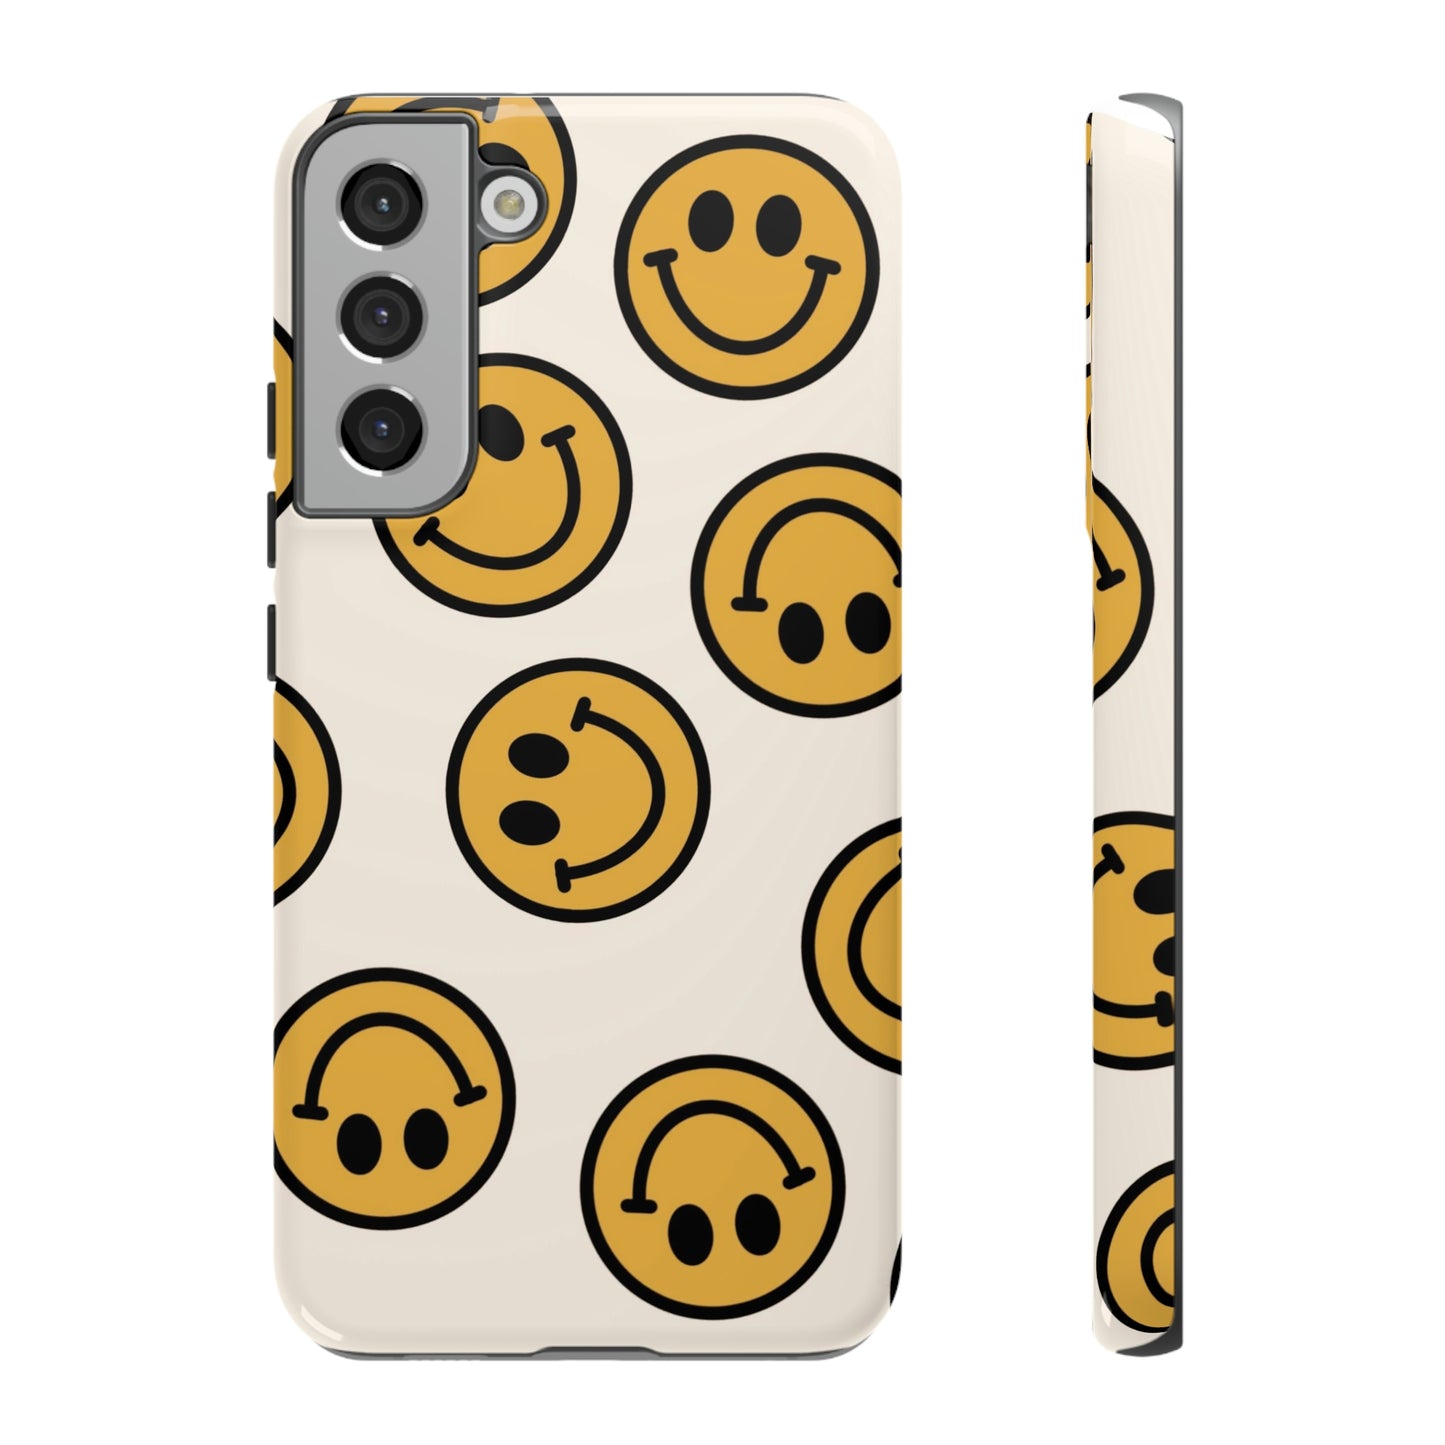 Smiley Face Tough Phone Cases